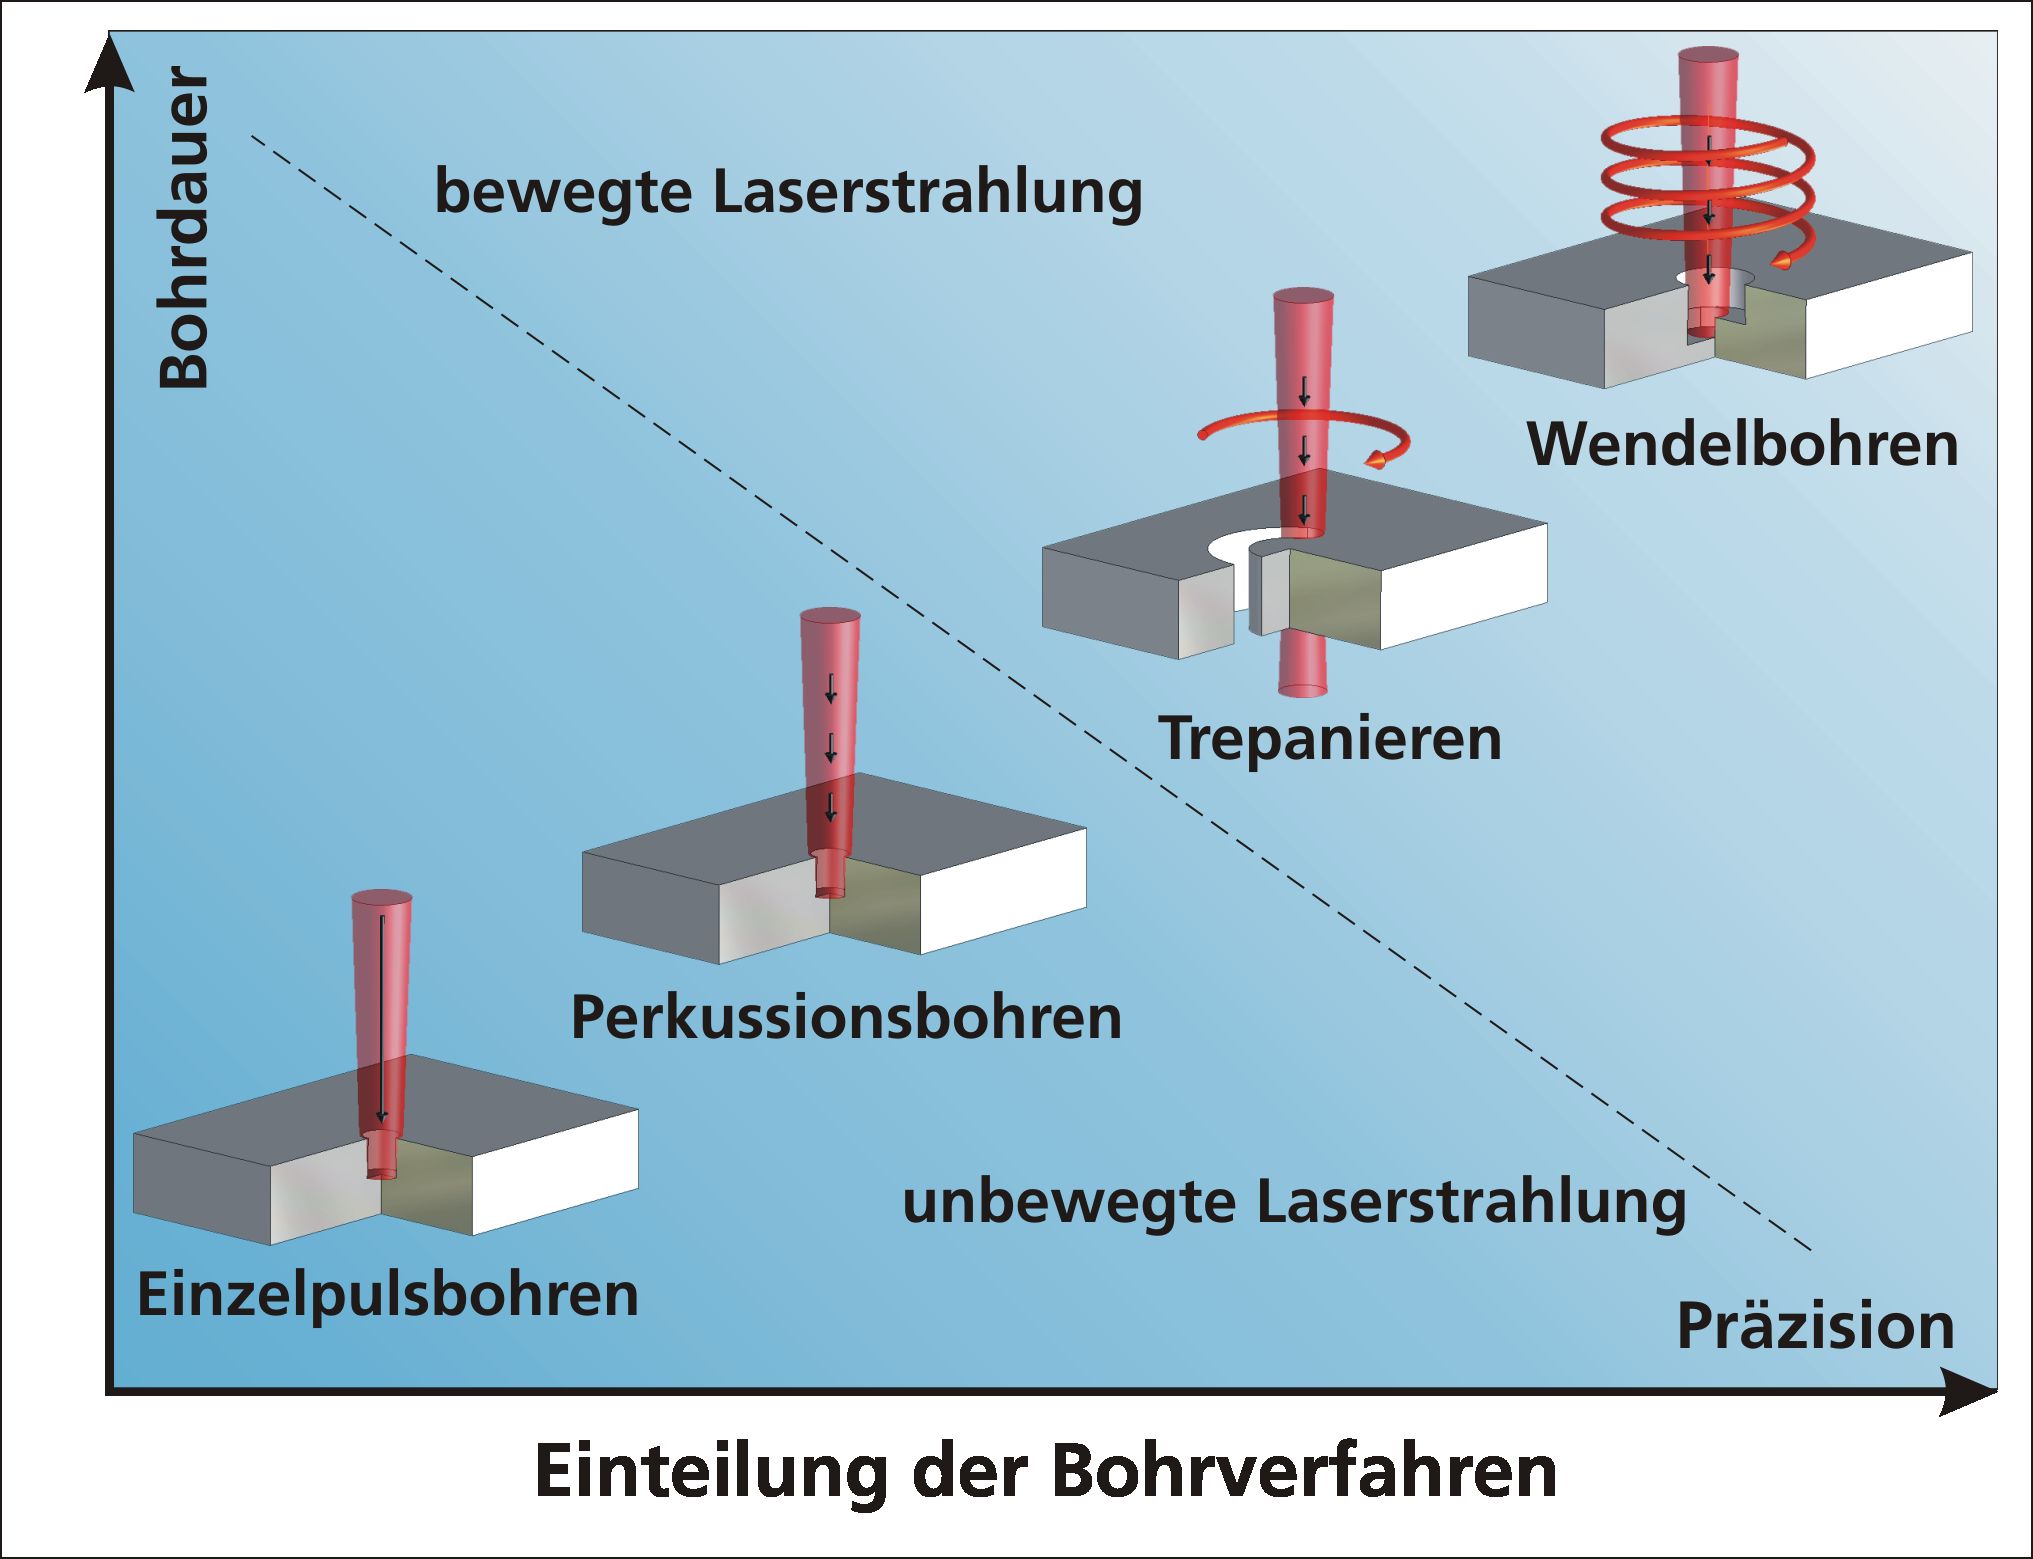 Die verschiedenen Verfahren beim Laserbohren lassen sich nach Präzision und Bohrgeschwindigkeit einordnen.